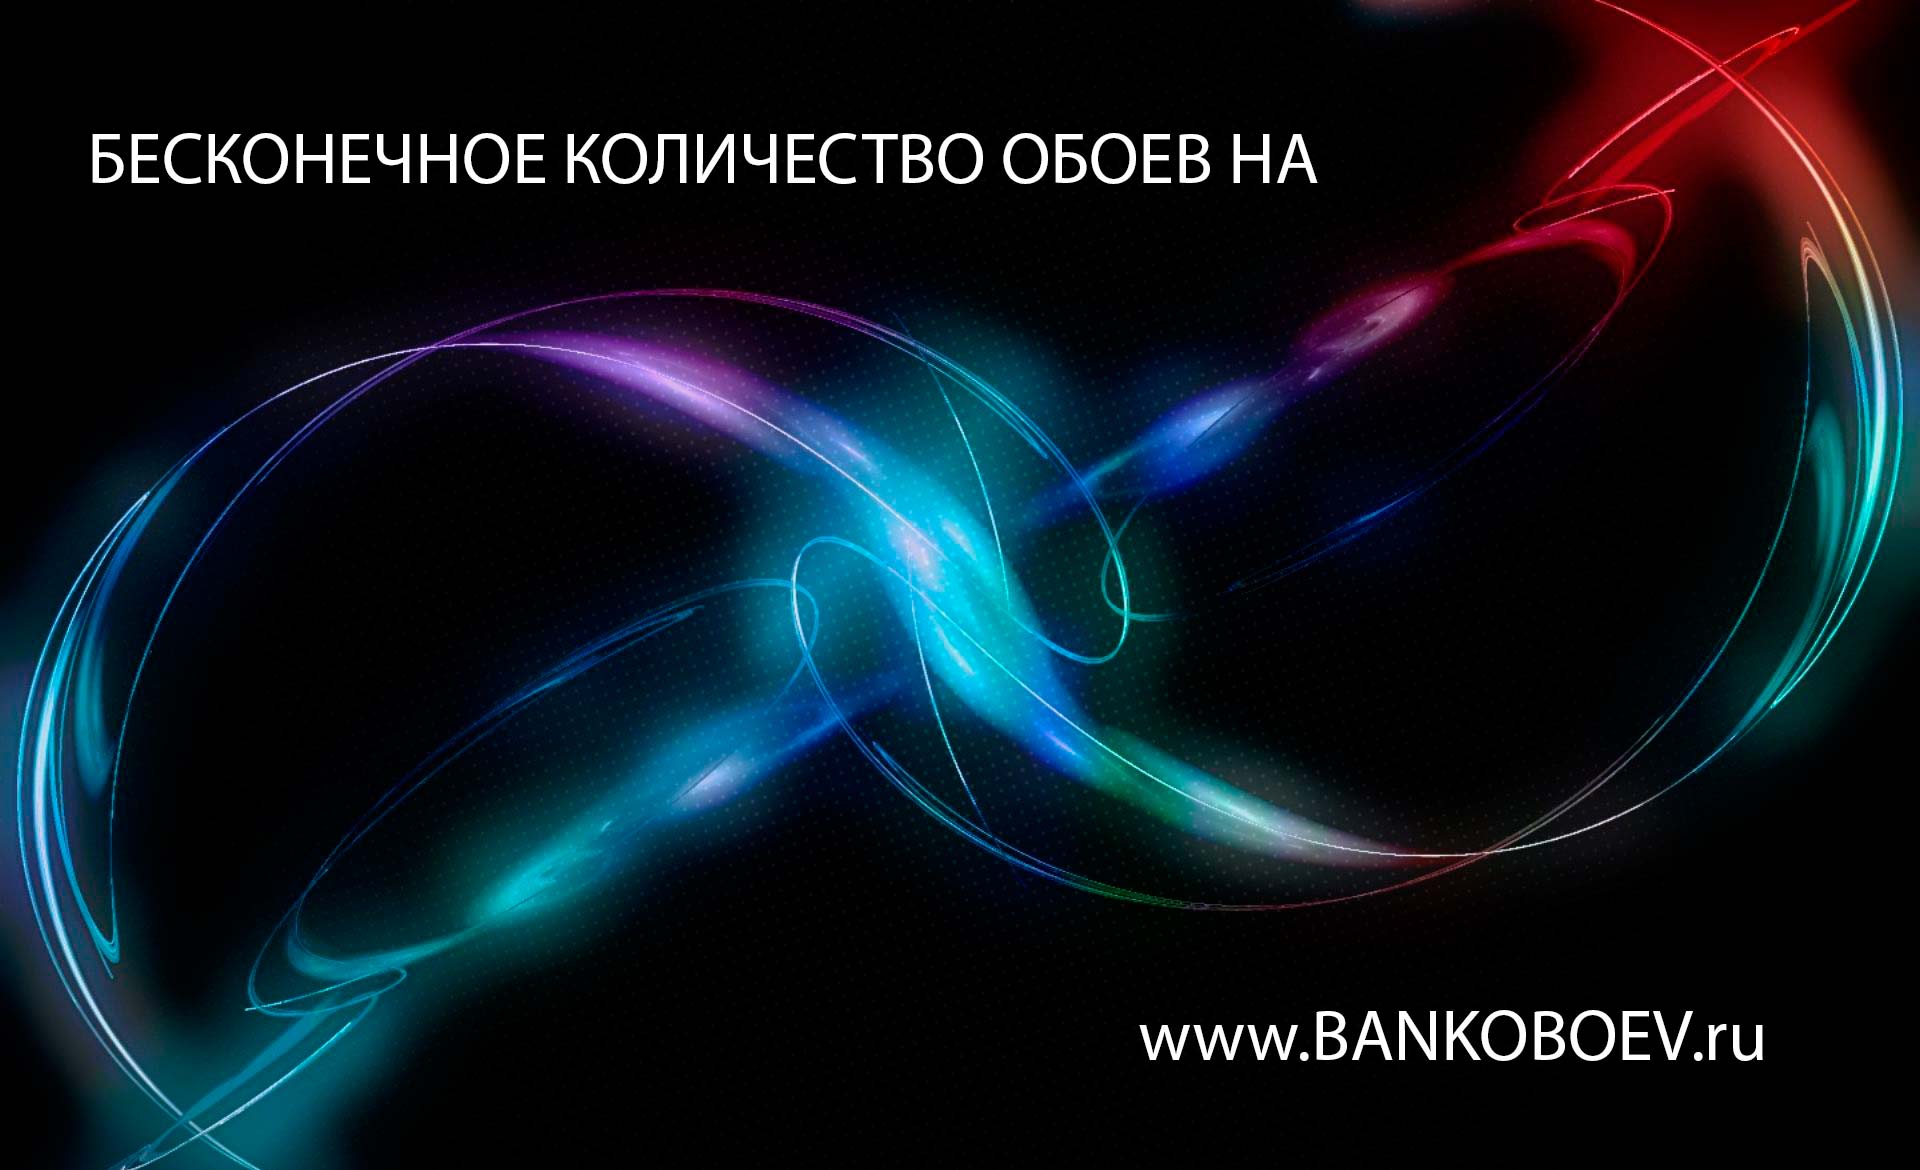 Bankoboev Ru Image Mjuxnzi3 Jpg